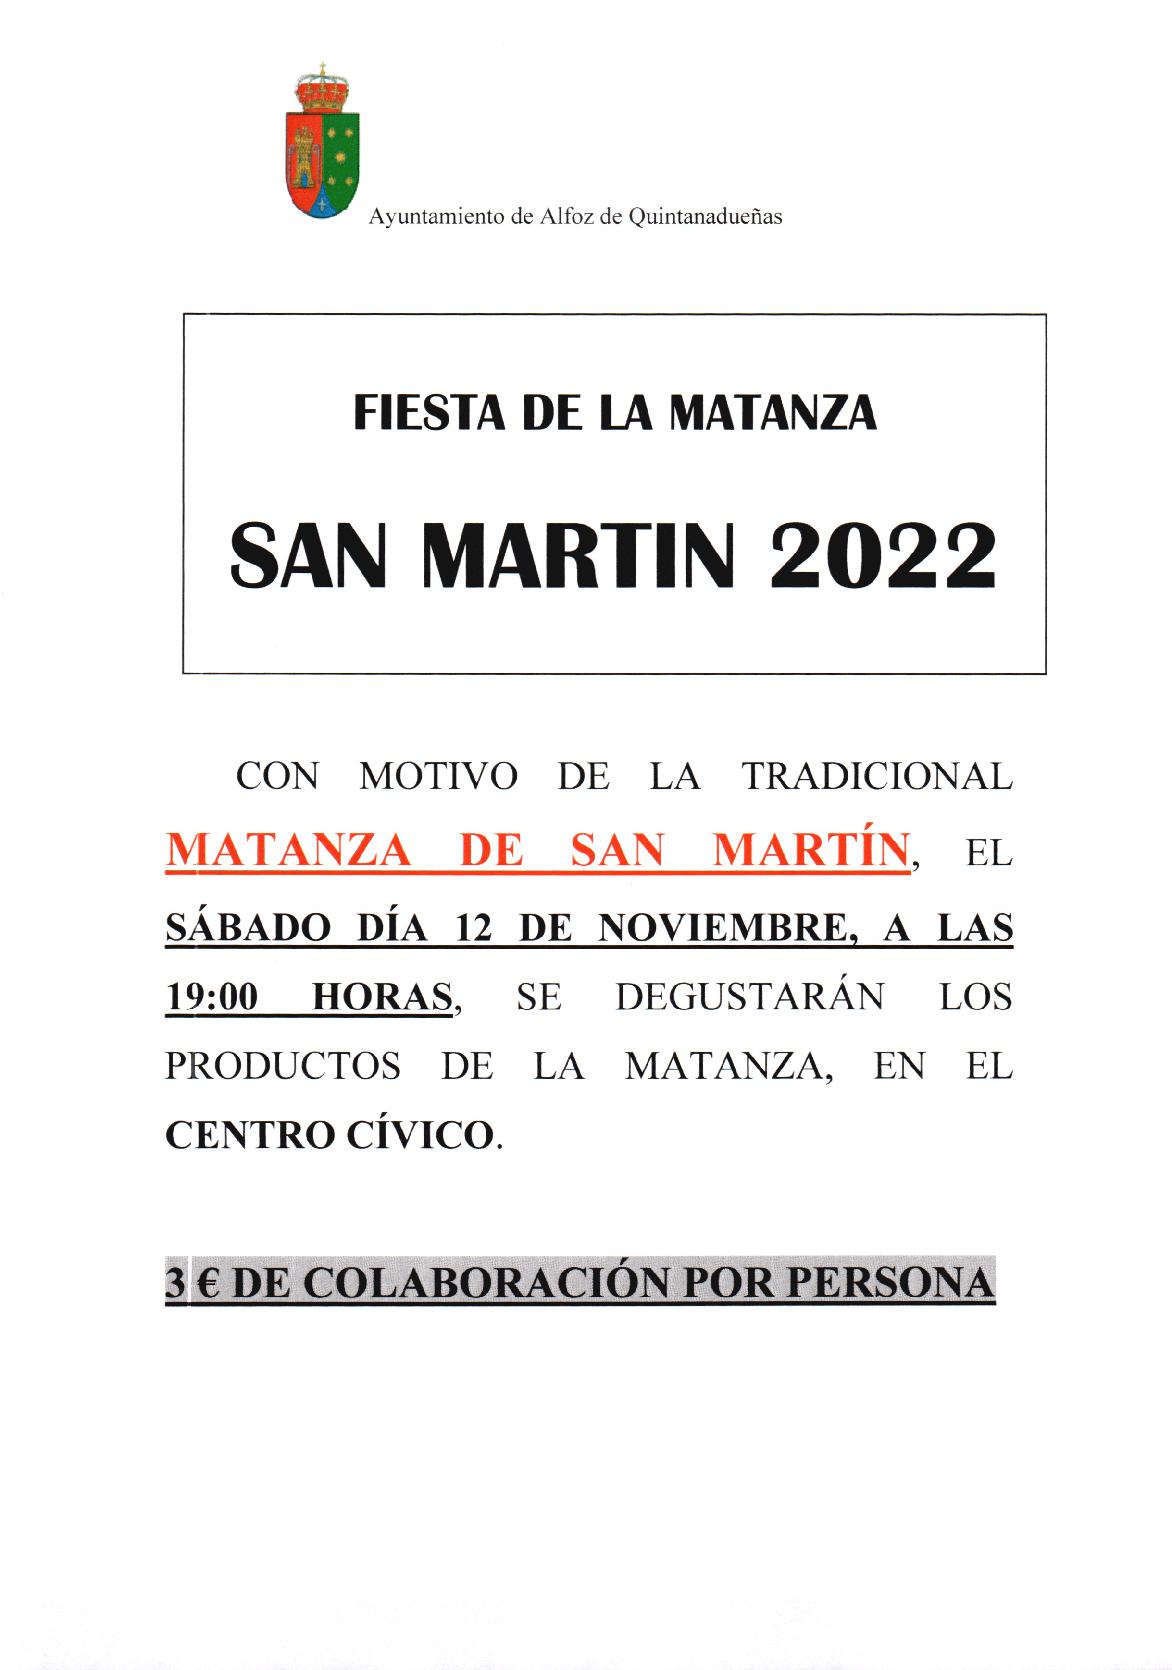 Celebración de la fiesta de San Martín 2022 en Quintanadueñas